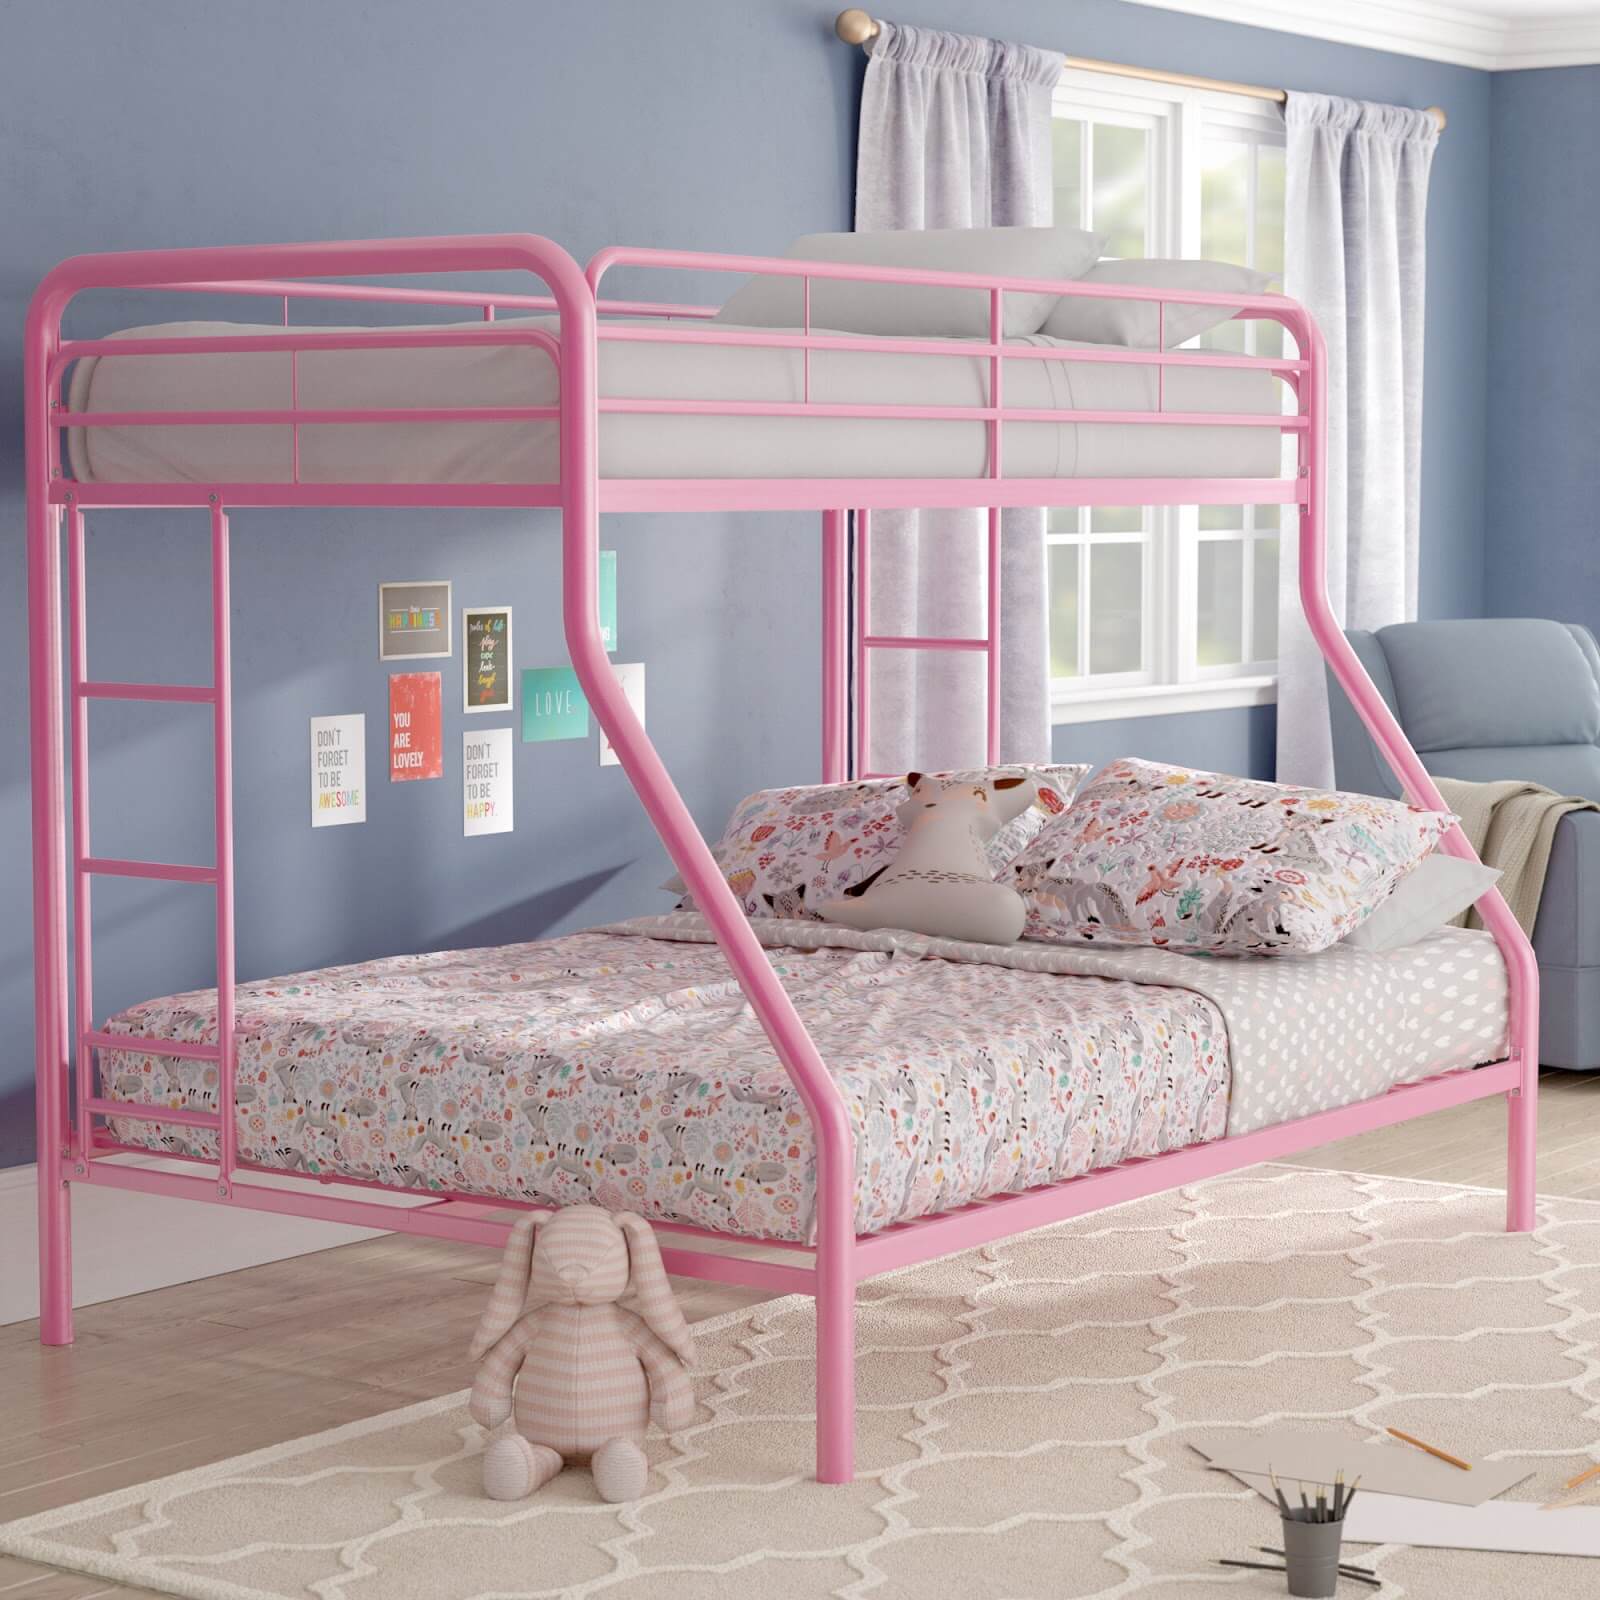 Mẫu giường sắt sơn hồng dành cho bé gái